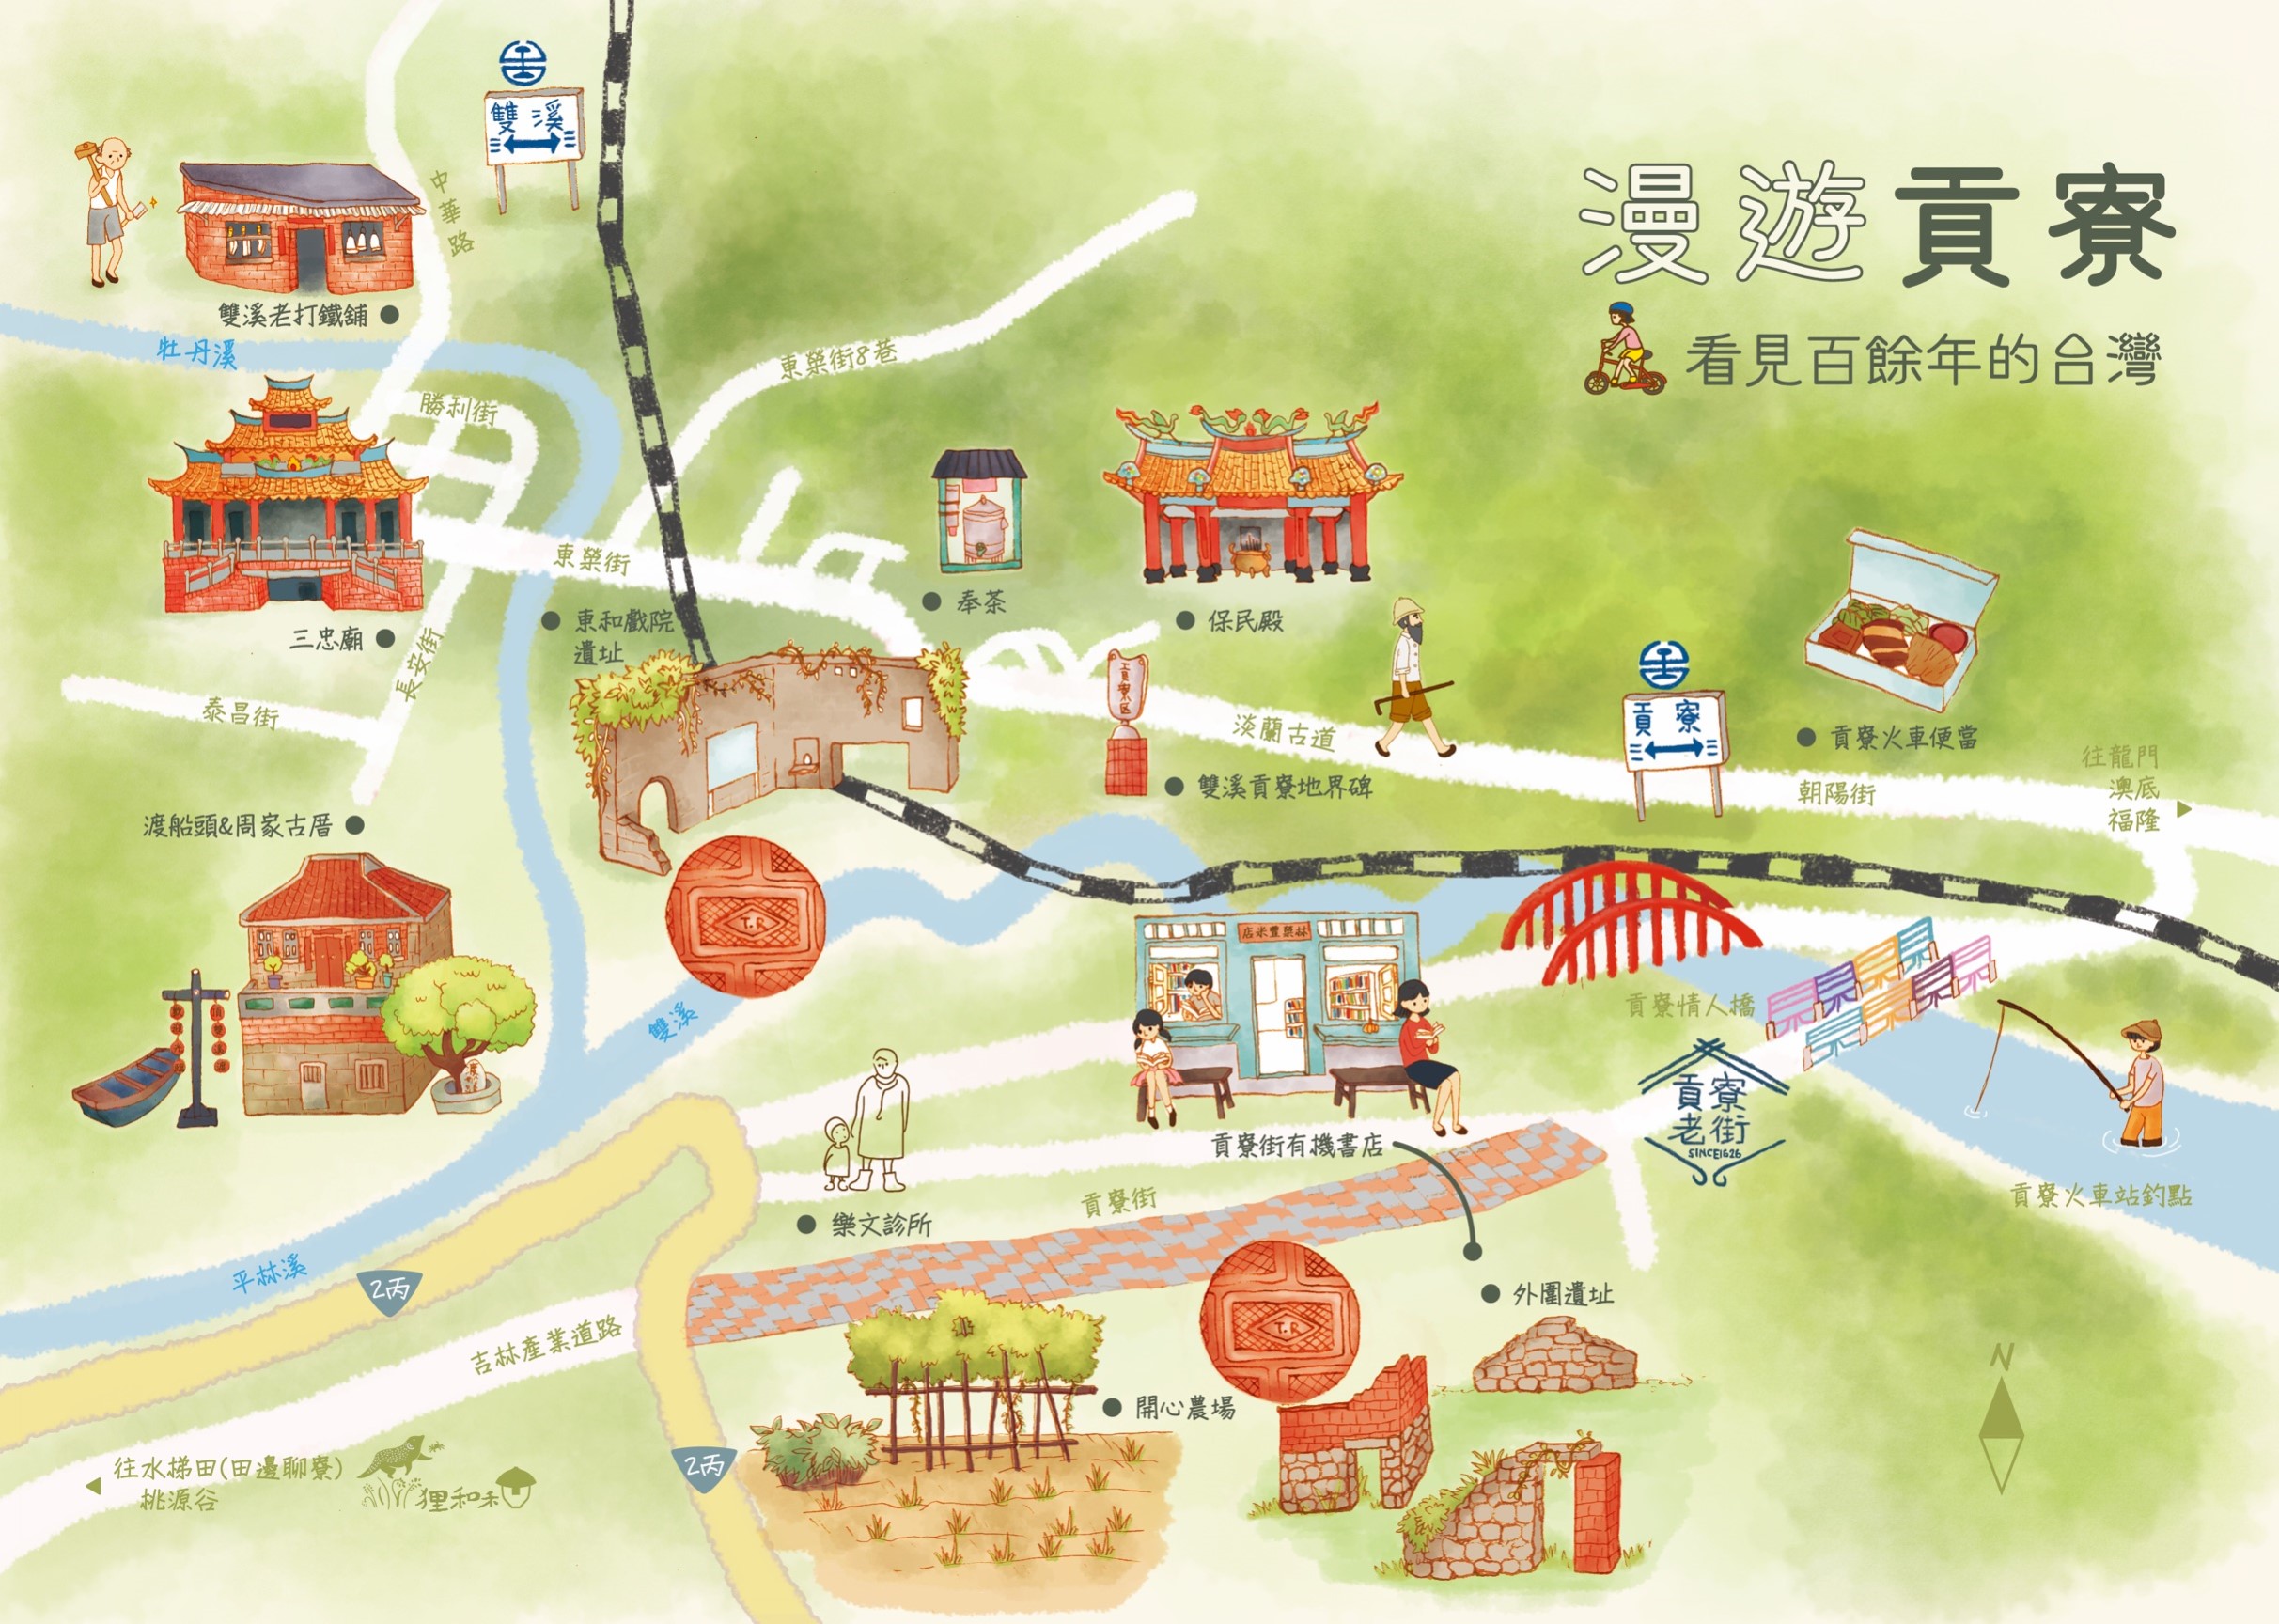 漫遊貢寮-看見百餘年的台灣--詳細內容如下